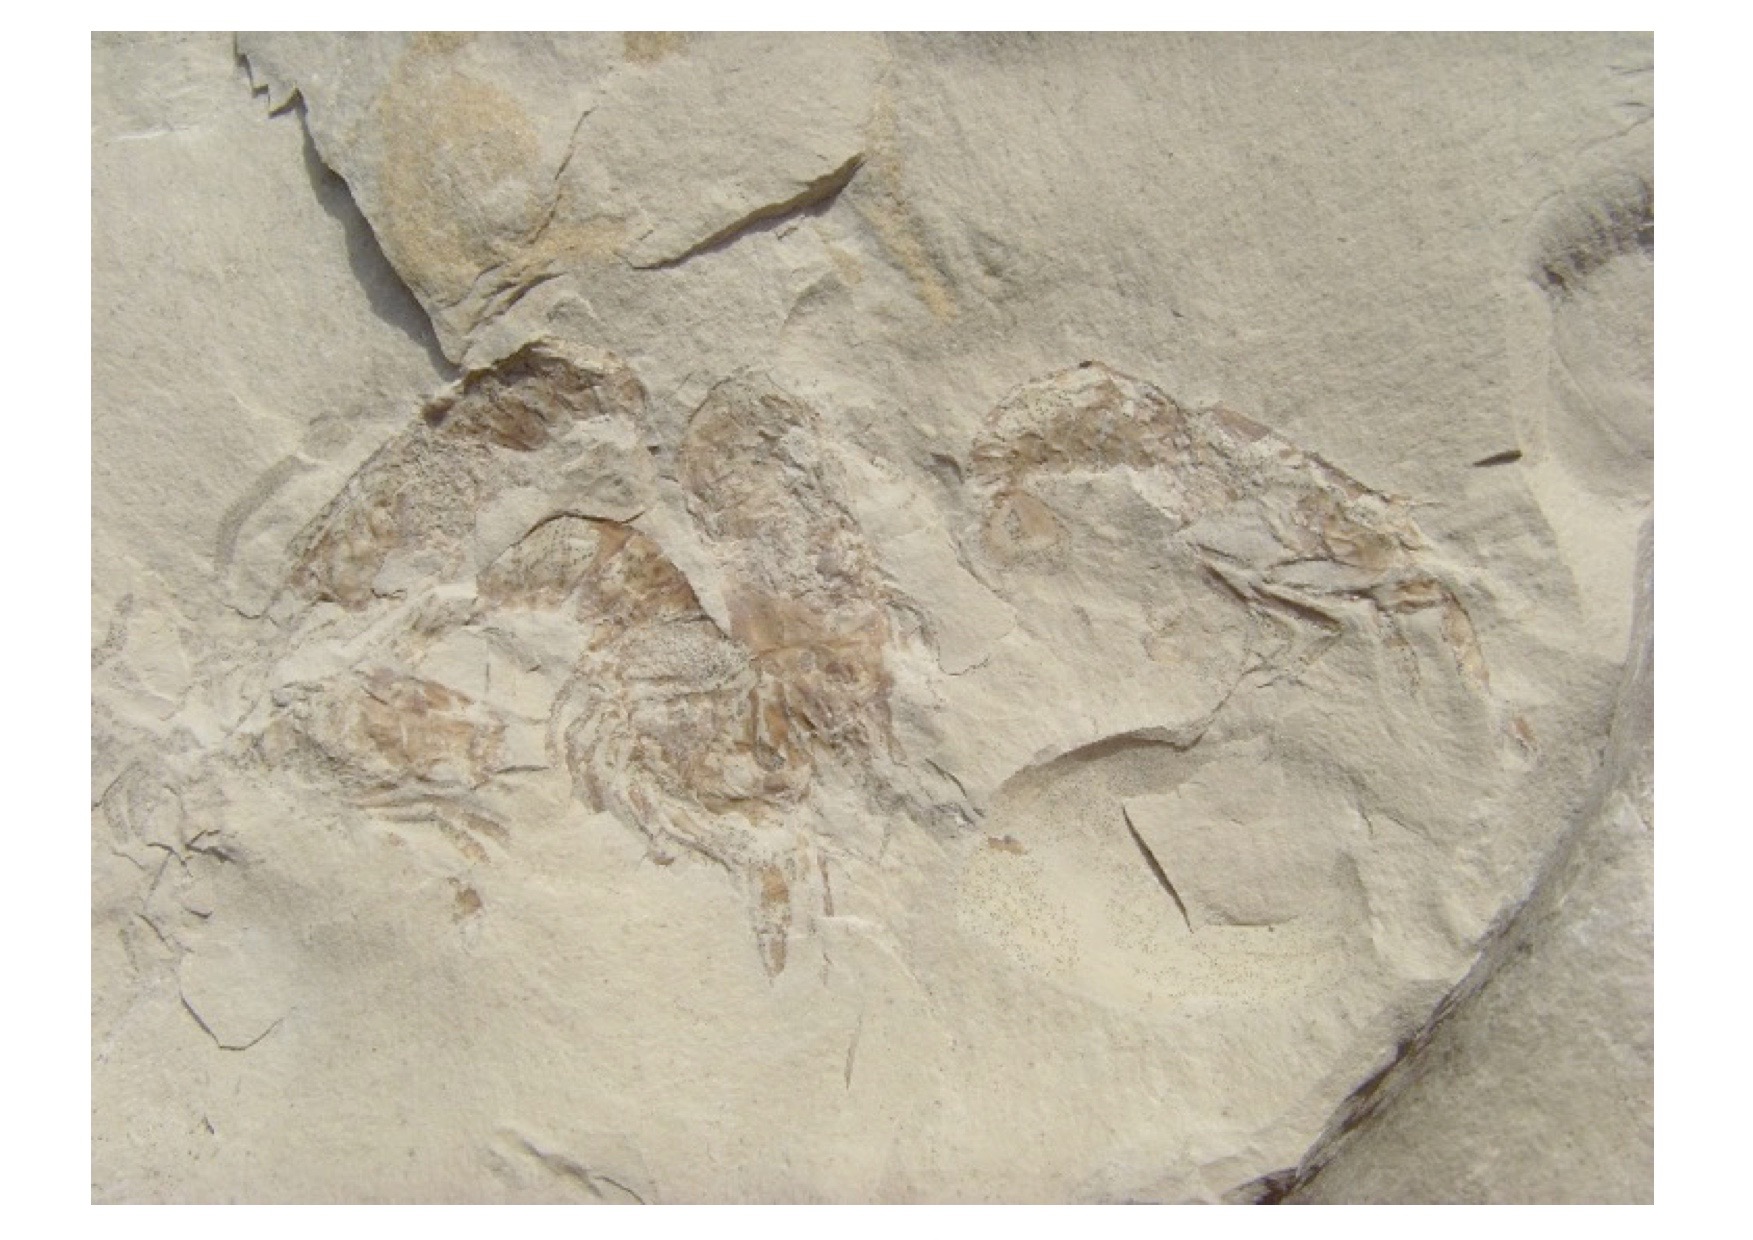 PSEUDASTACUS LEMOVICES, un fossile corrézien exceptionnel  exposé à l’Espace de Découverte de Noailhac